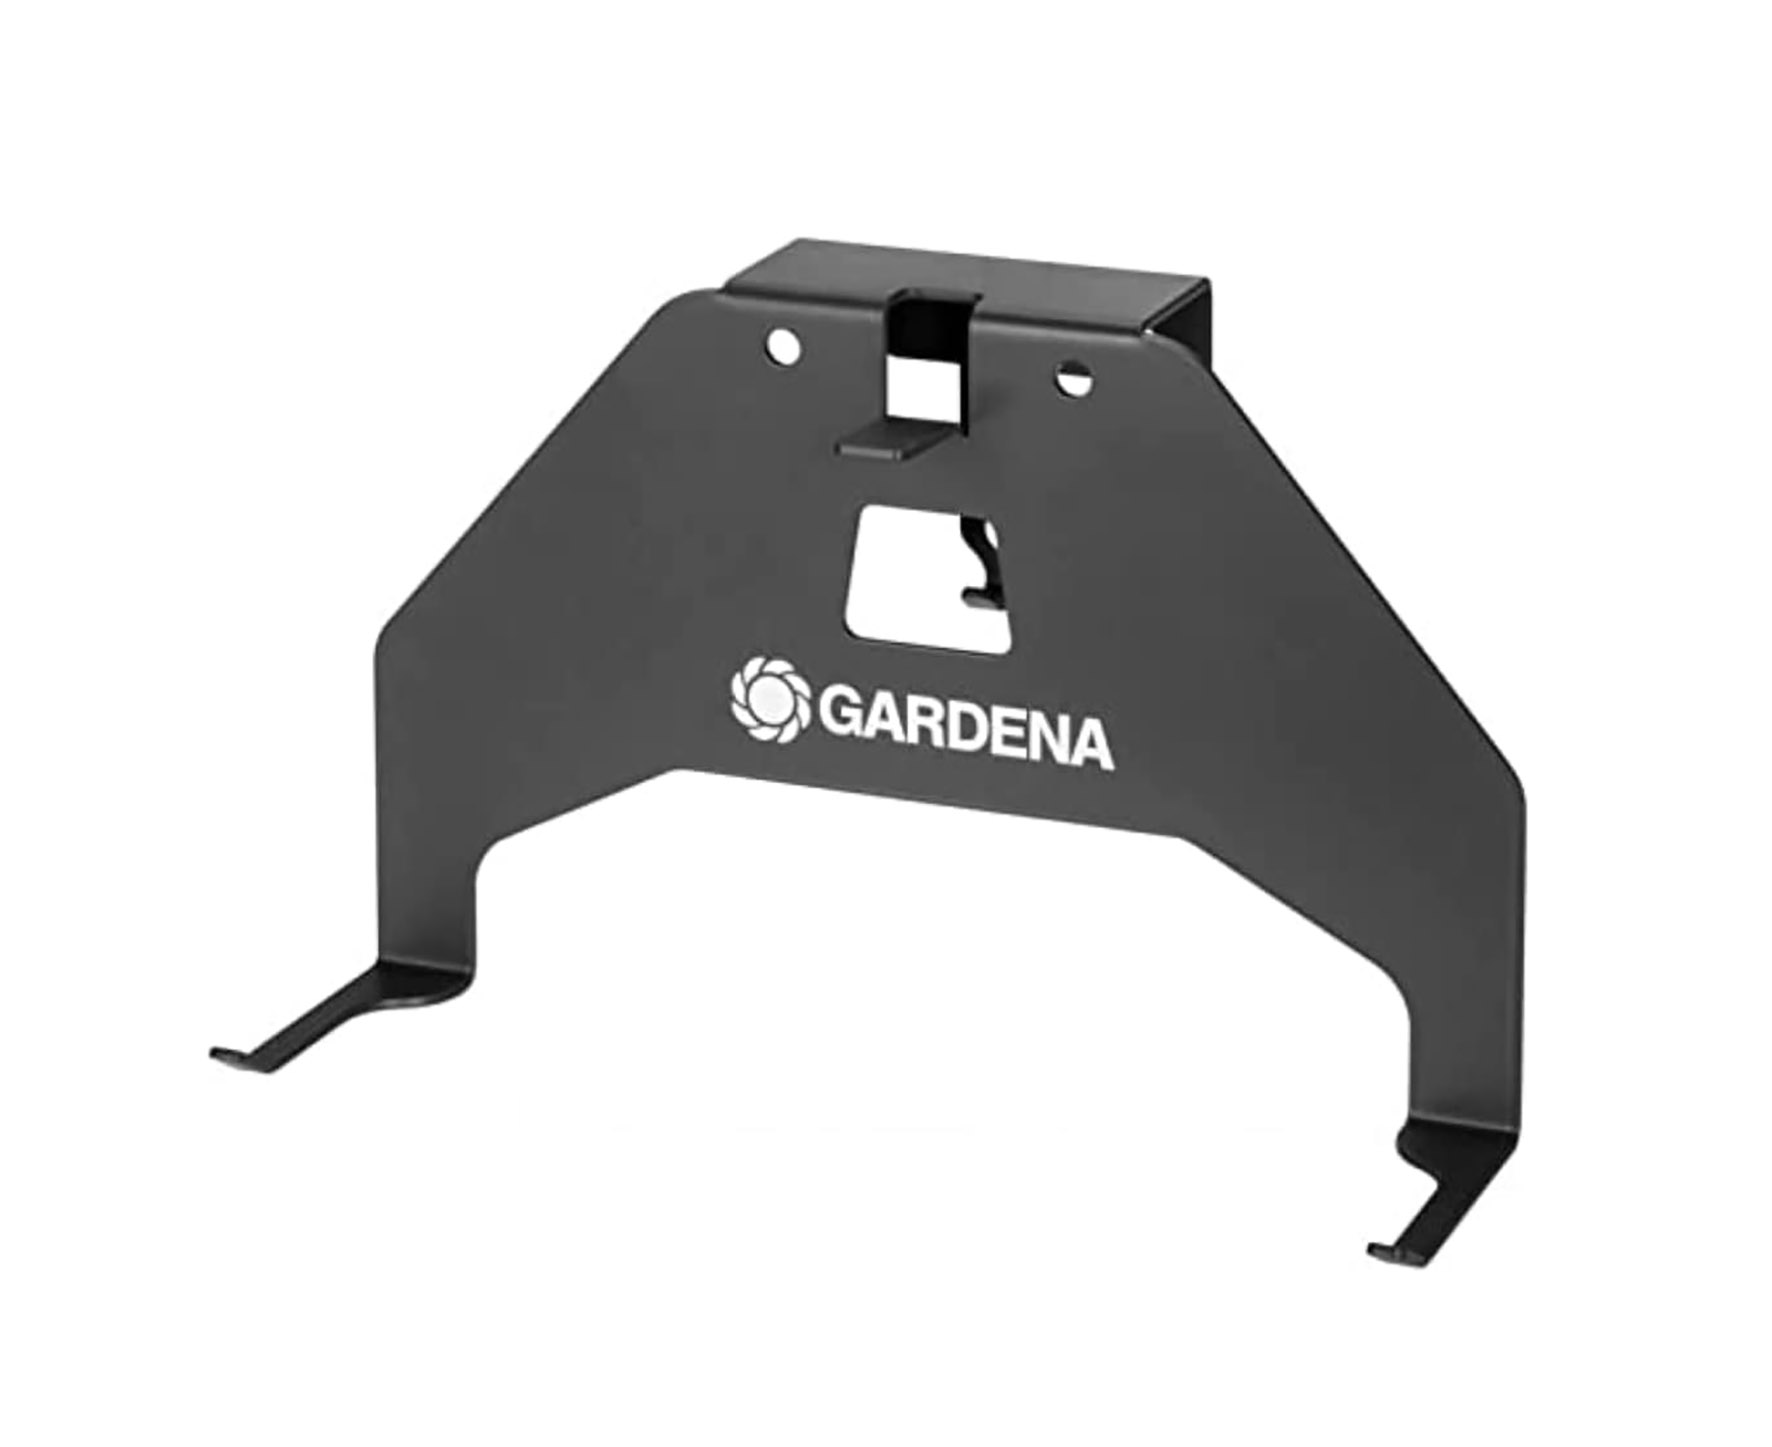 Gardena Mähroboter Wandhalterung in grau - für SILENO Modelle - Metall Halterung für Rasenmäher Roboter - Wandhaken Befestigungshaken Wand Halter zum Anschrauben